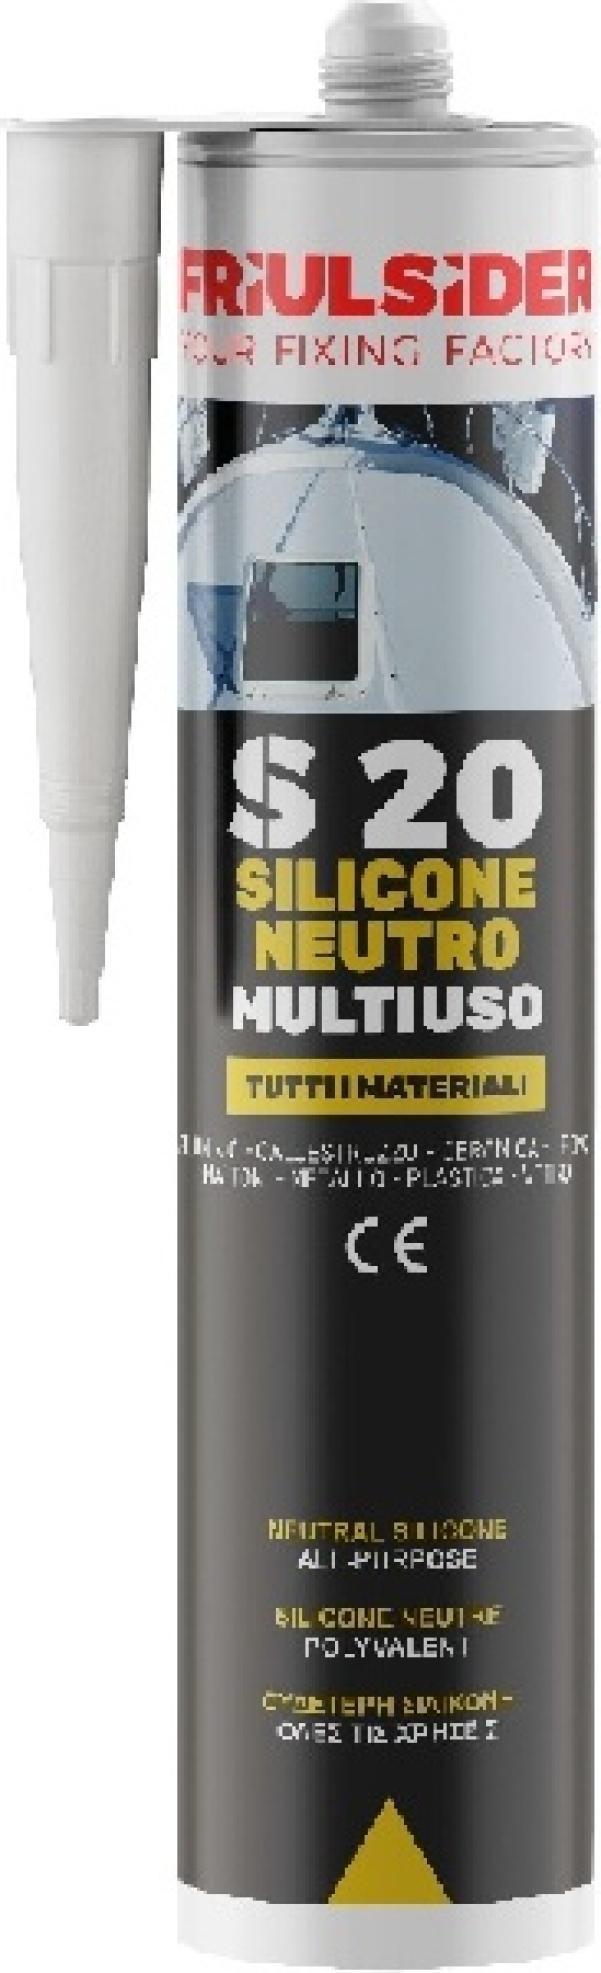 Silicone neutro multiuso trasparente 310 ml Friulsider S2000